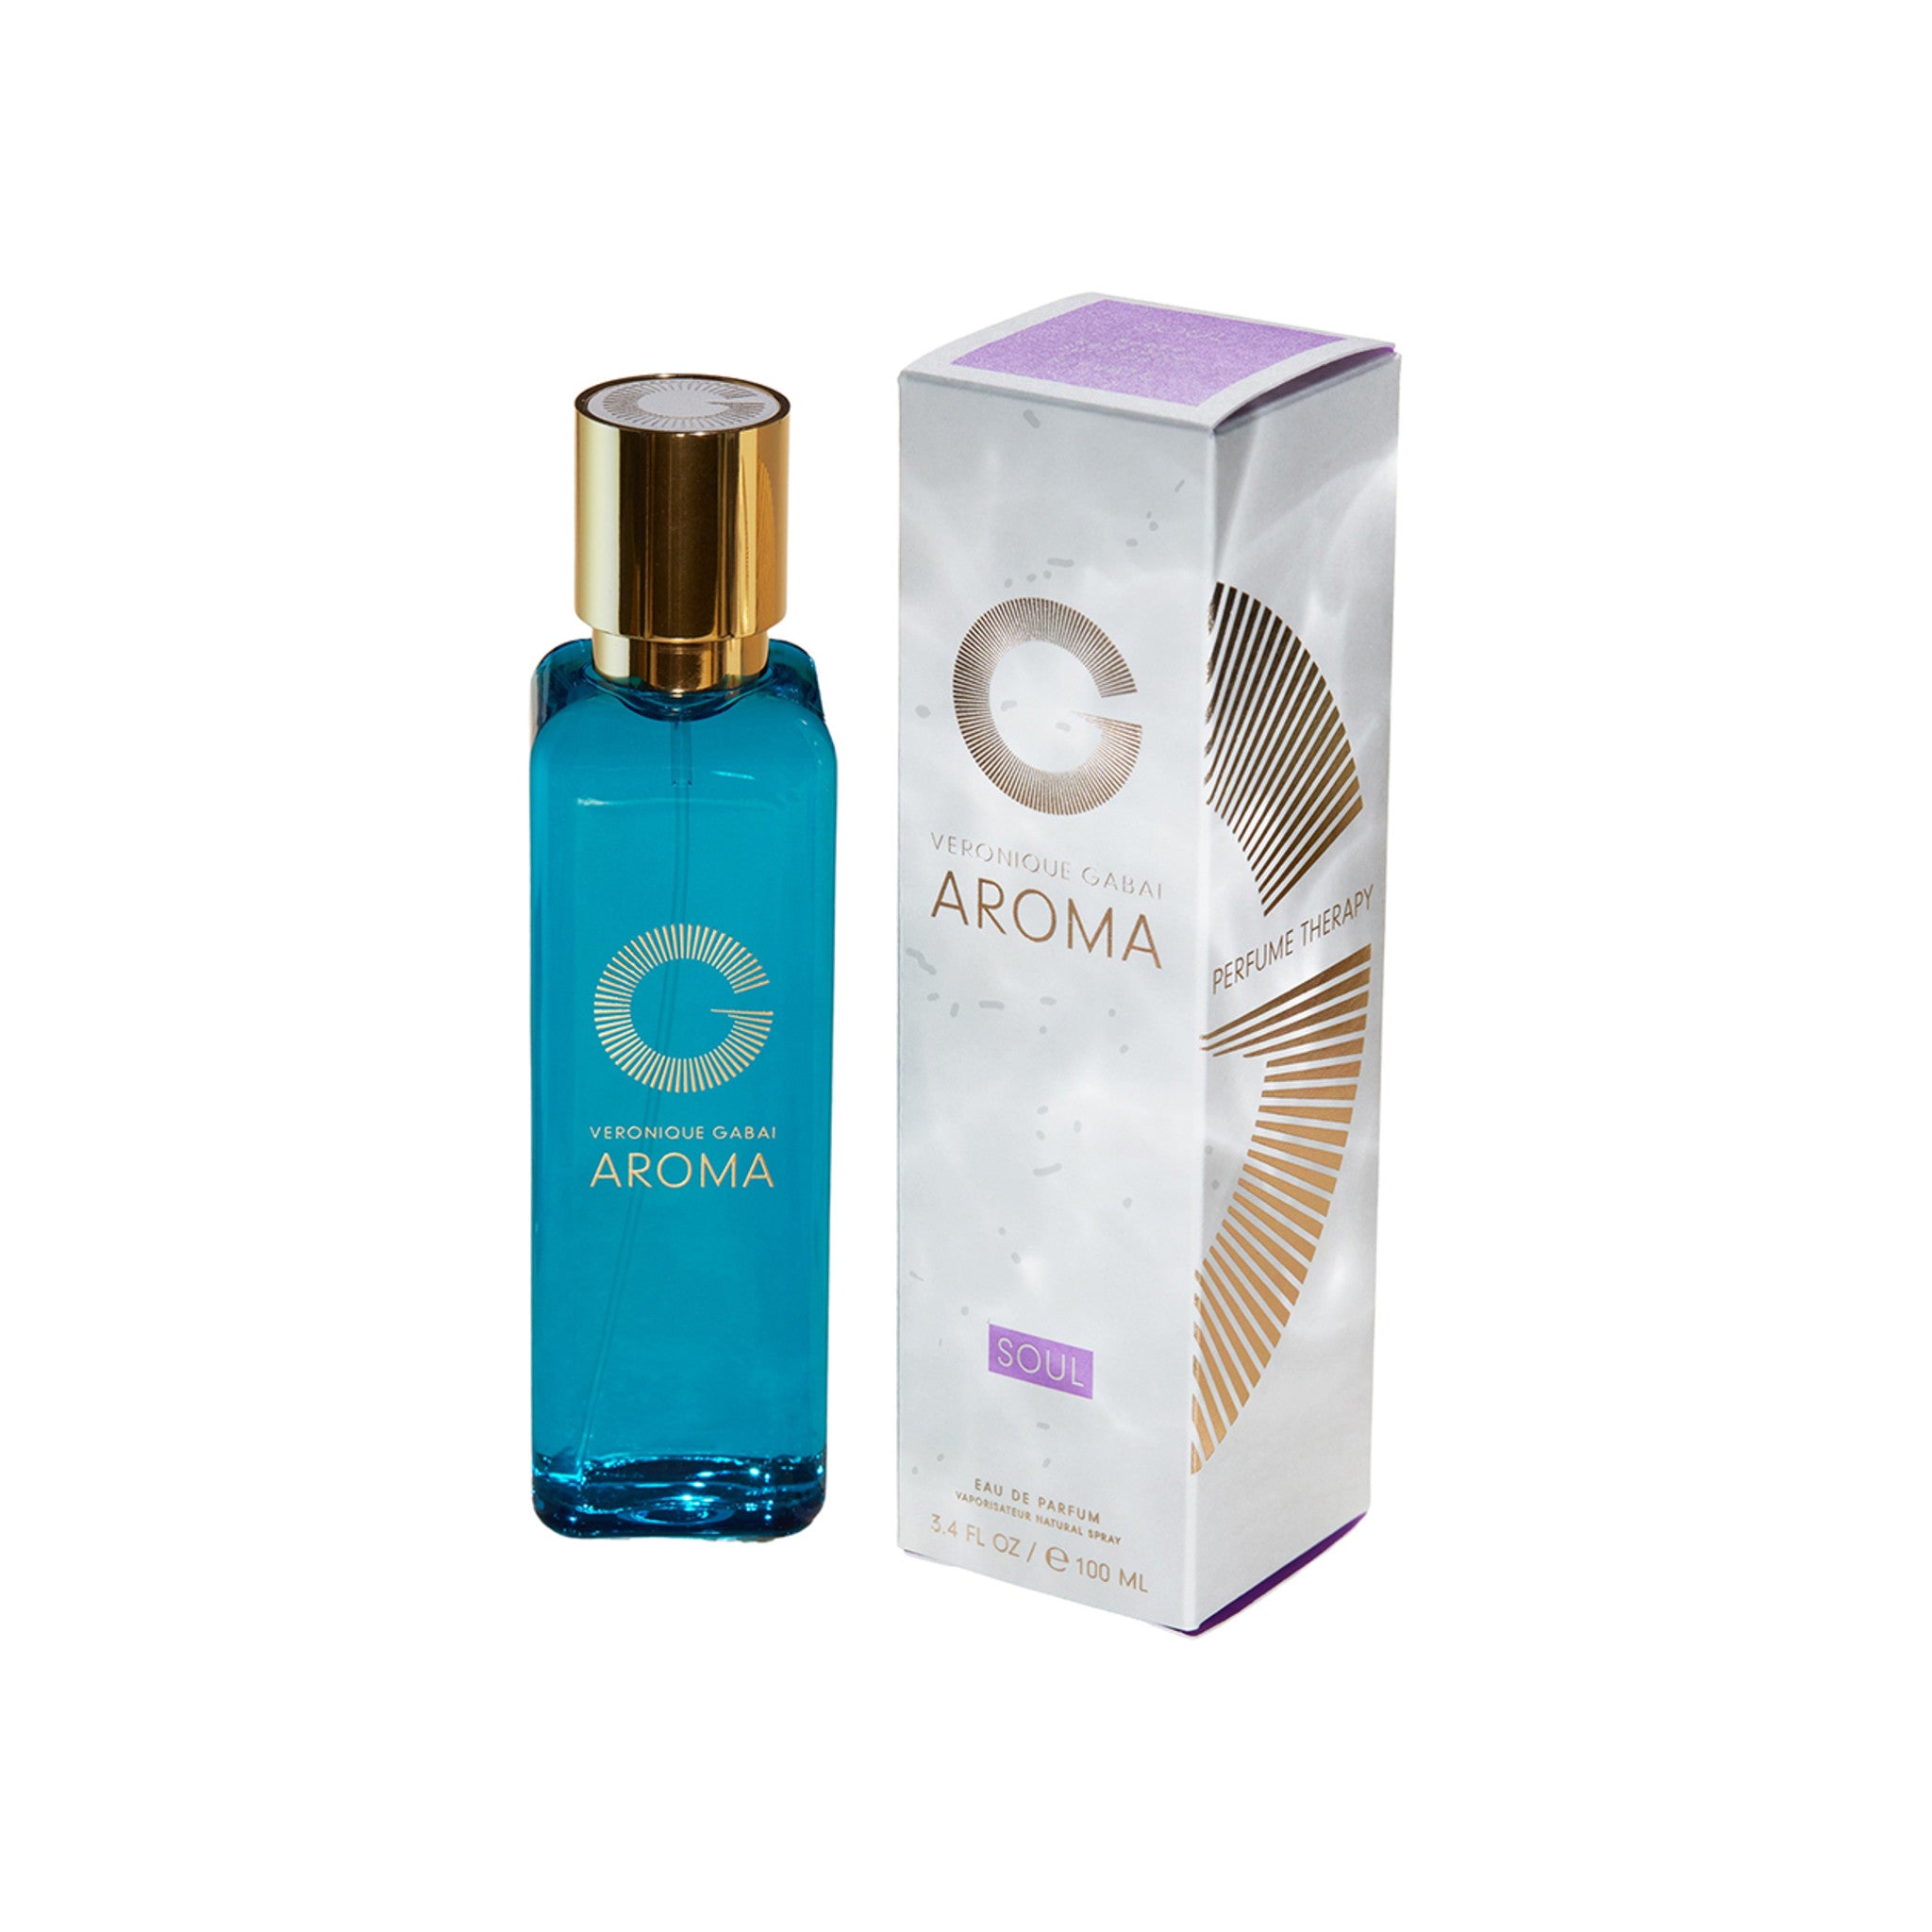 Veronique Gabai Aroma Soul Eau de Parfum Size variant: 3.4 fl oz | 100 ml main image.